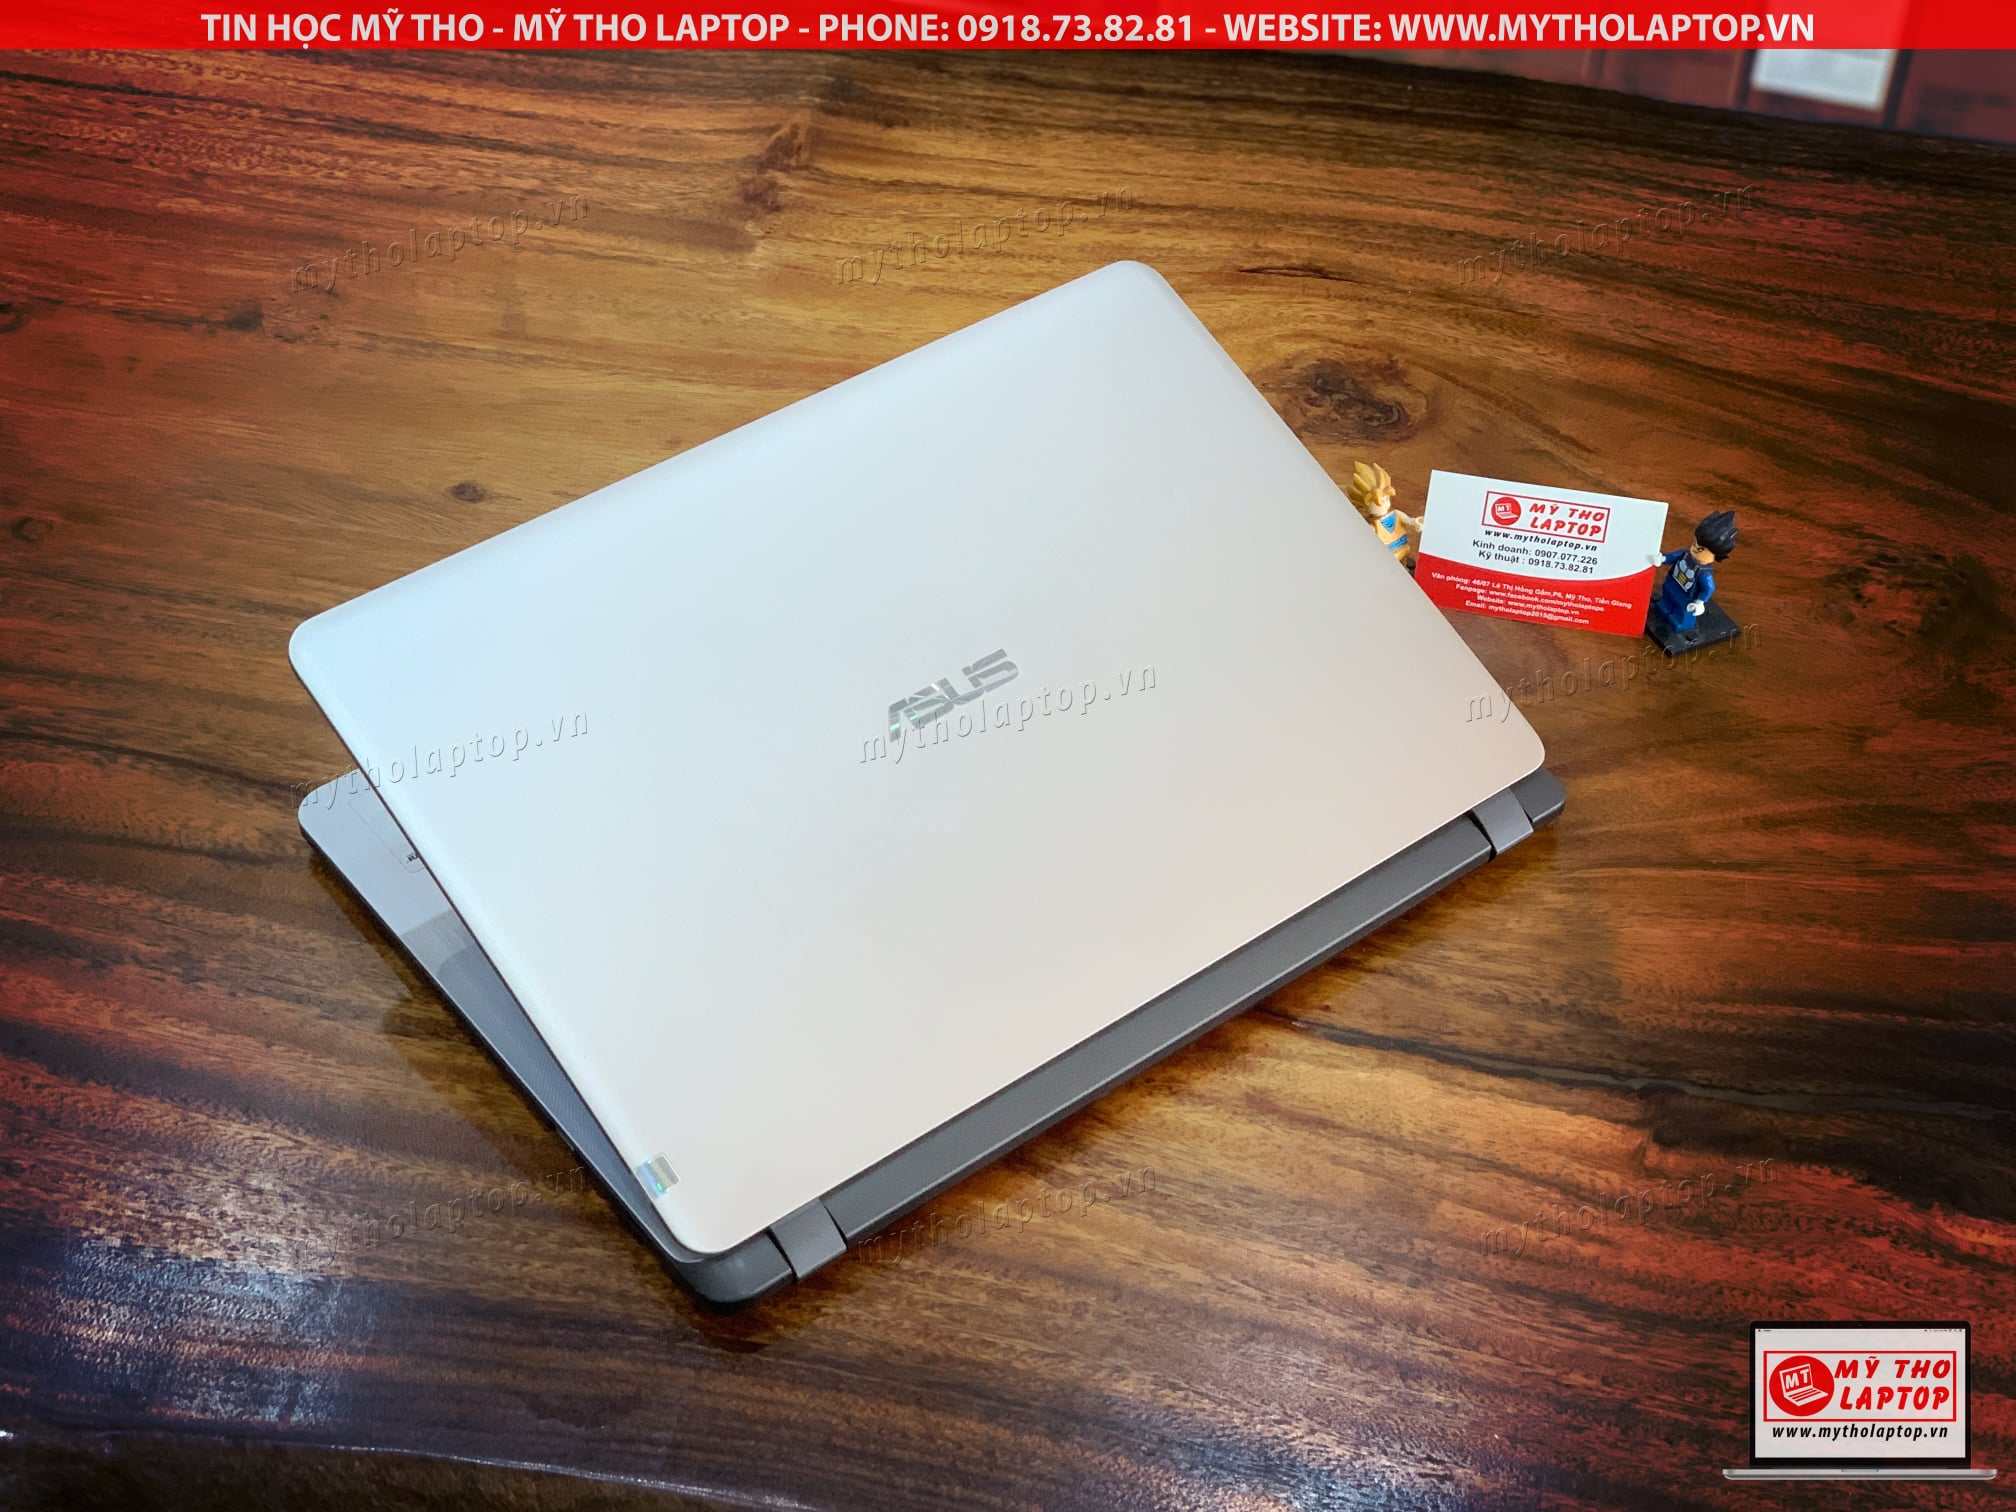  ASUS X507U Core i3 8130U - Ram 8GB - SSD 128GB - Nvidia MX130 - 15.6 inch